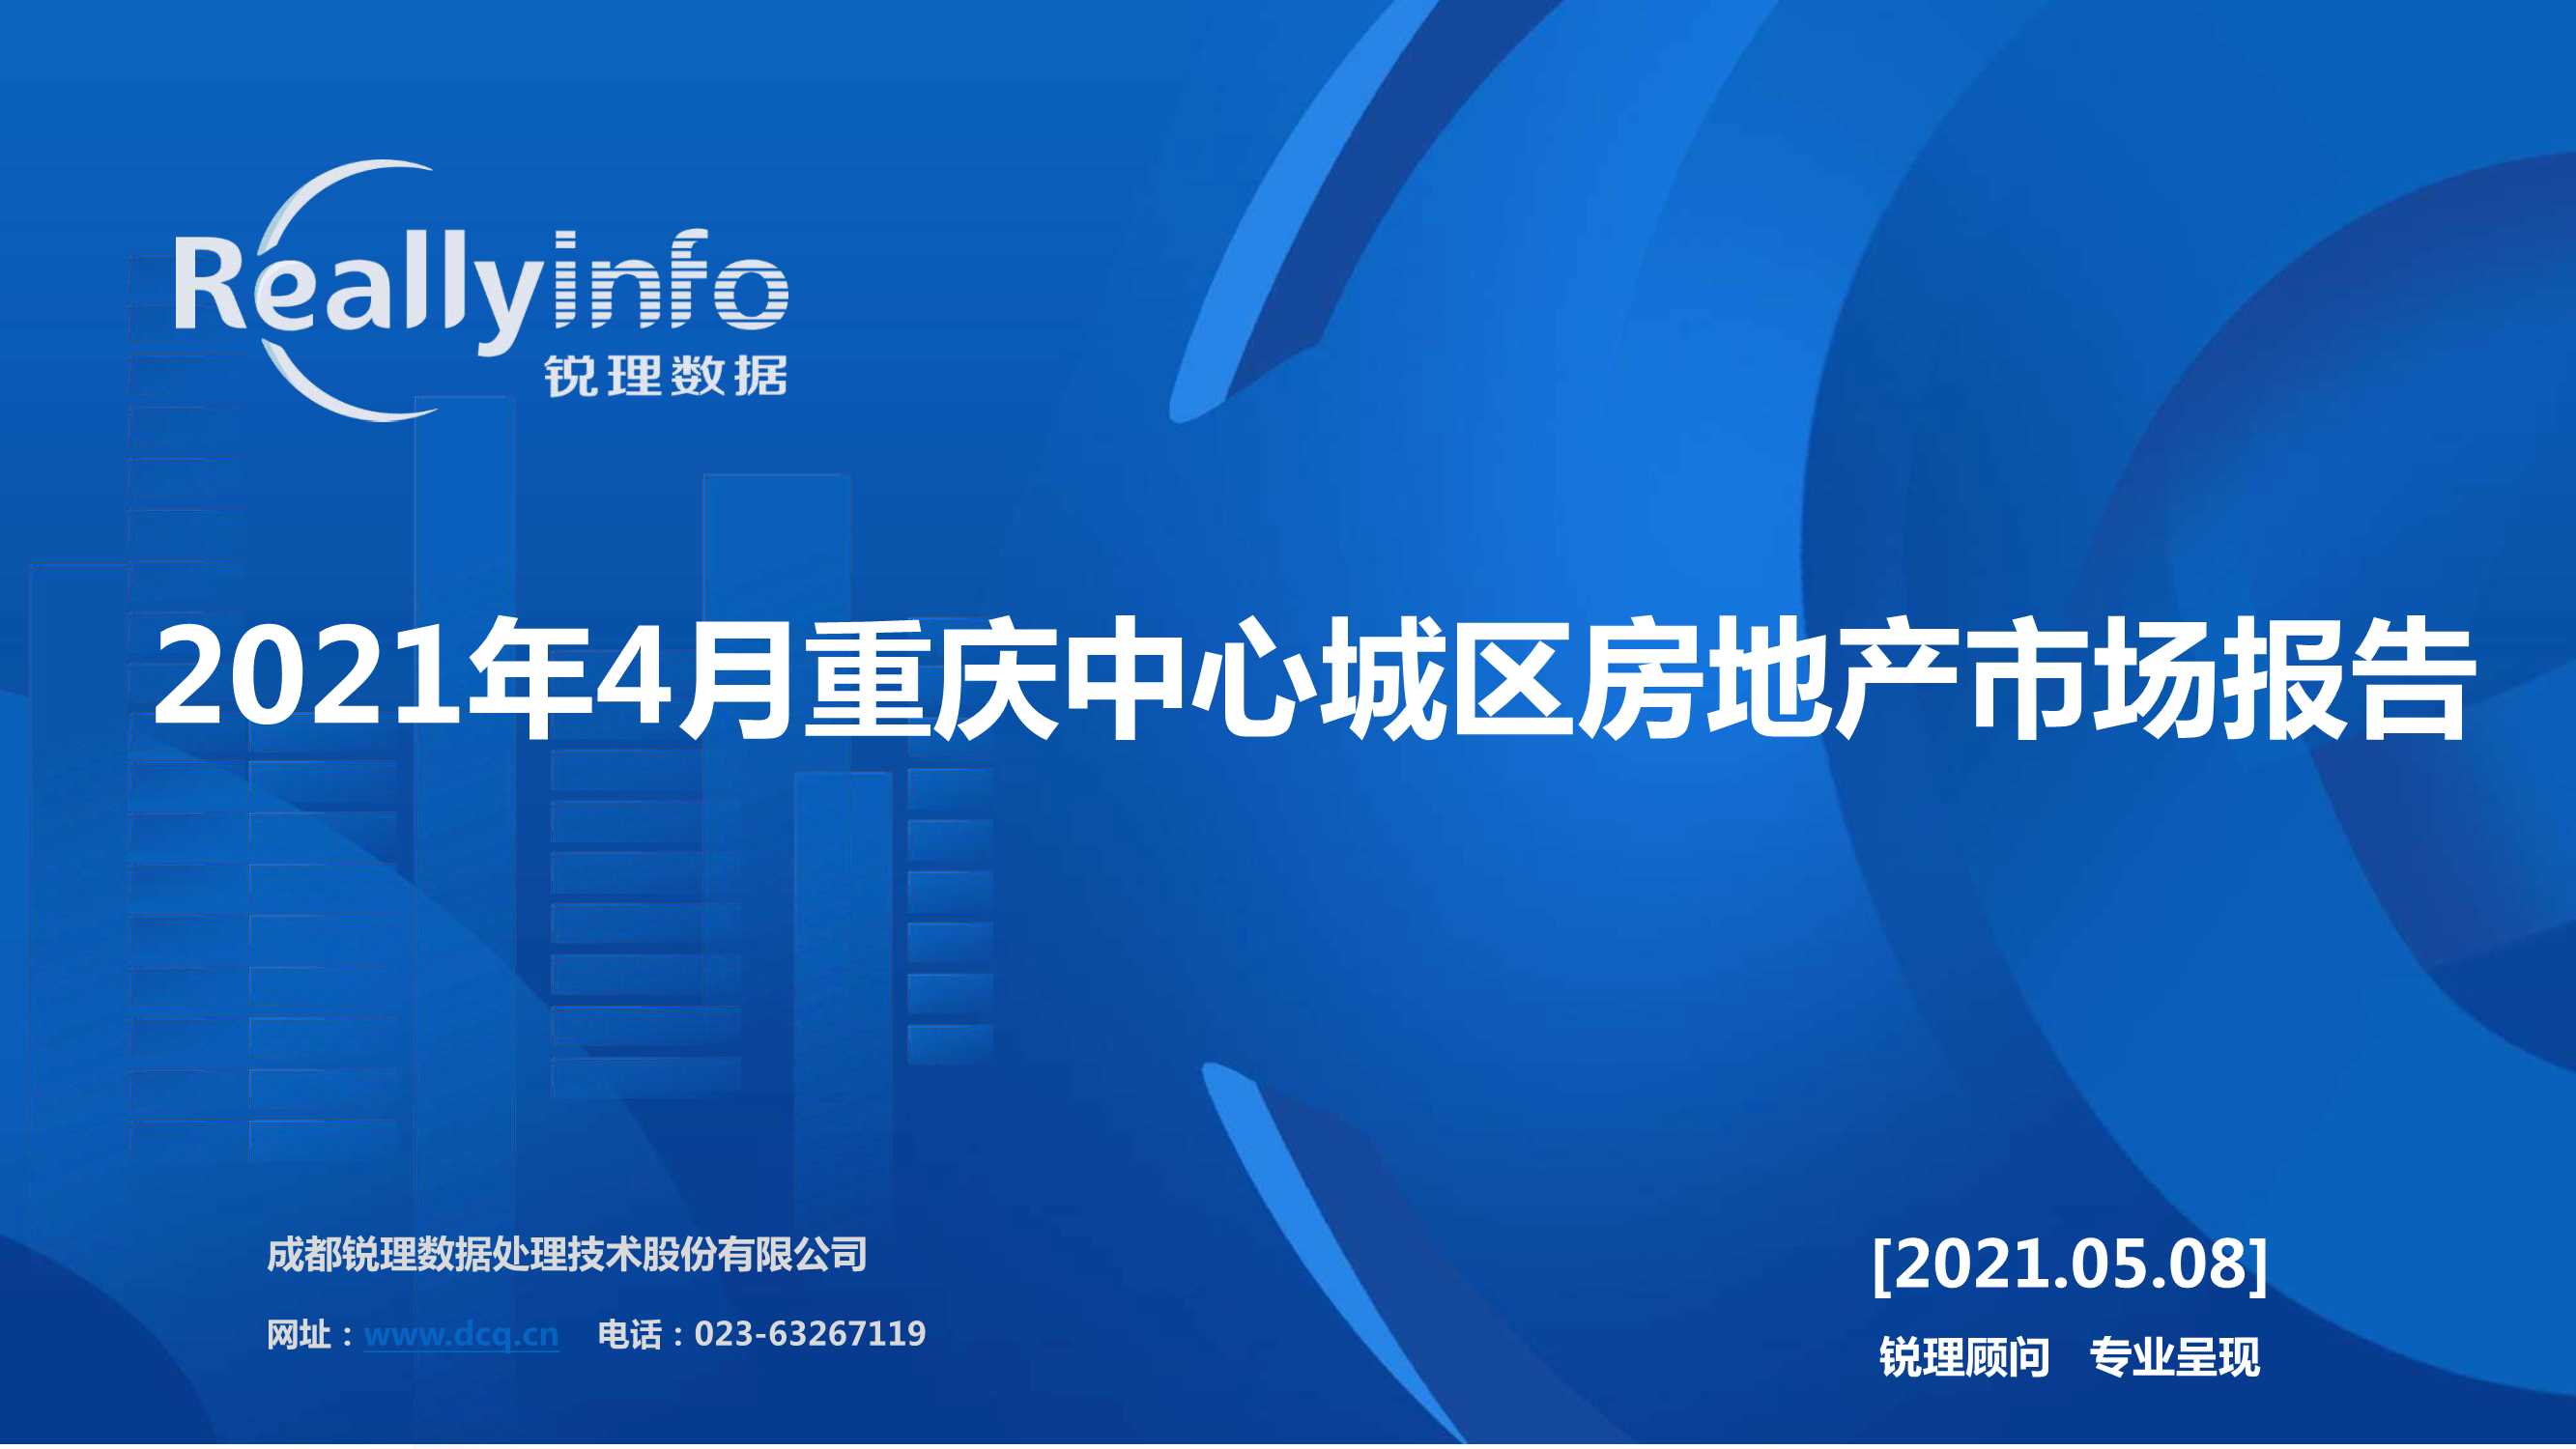 锐理数据-2021年4月重庆中心城区房地产市场报告-2021.05-44页